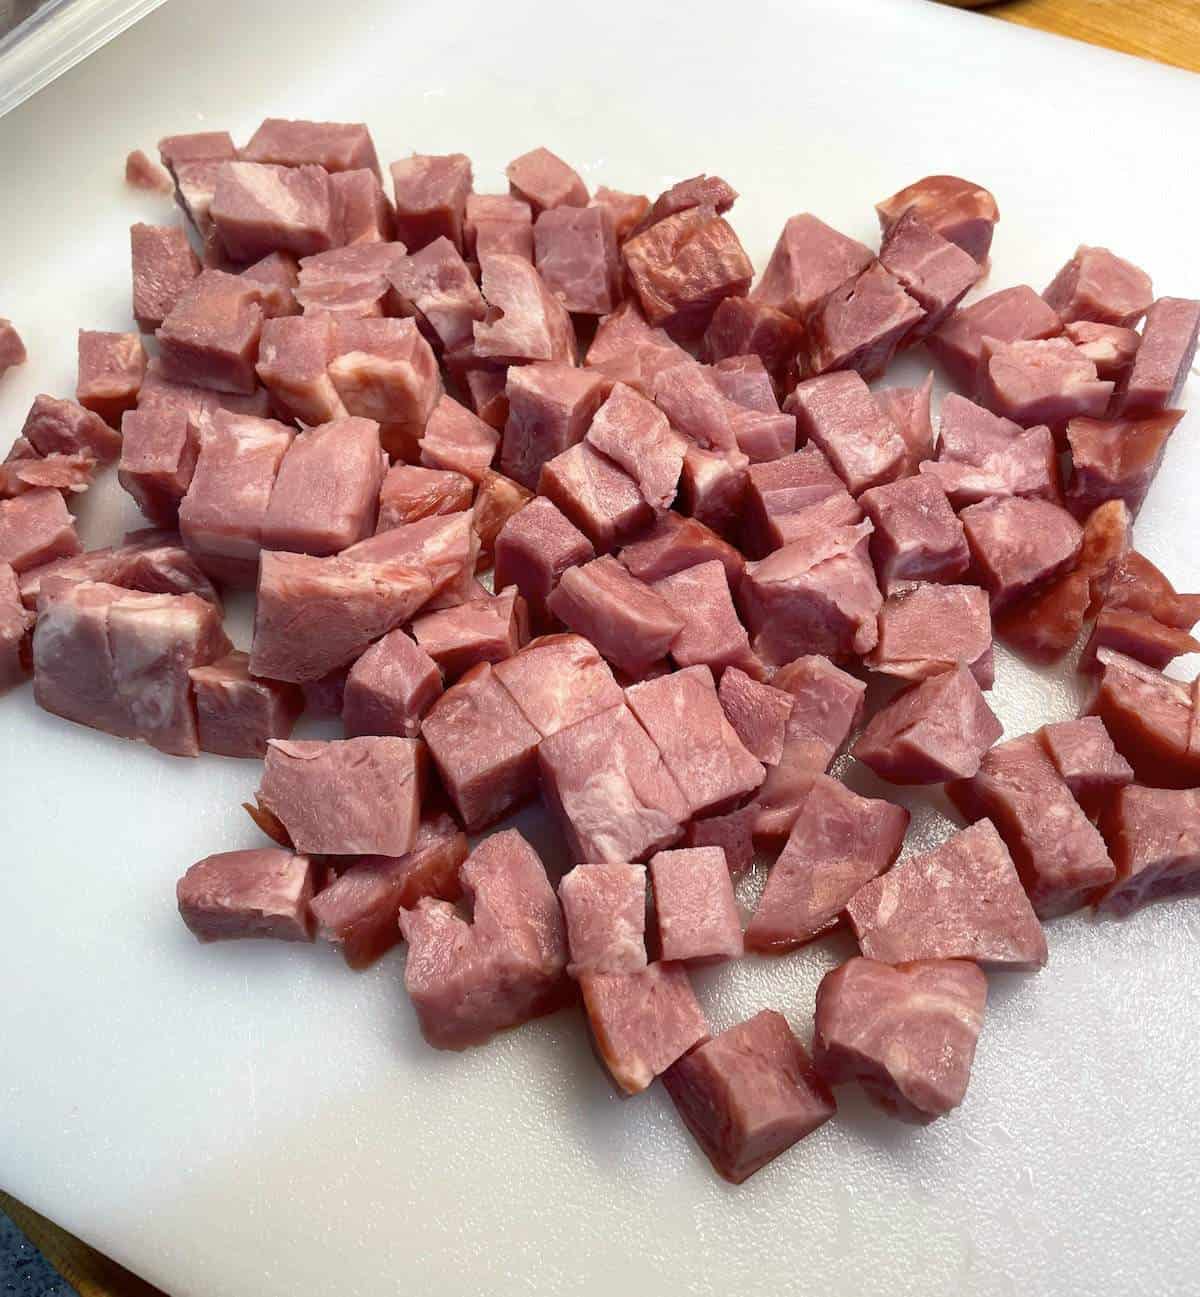 Diced seasoning ham on a white cutting board.